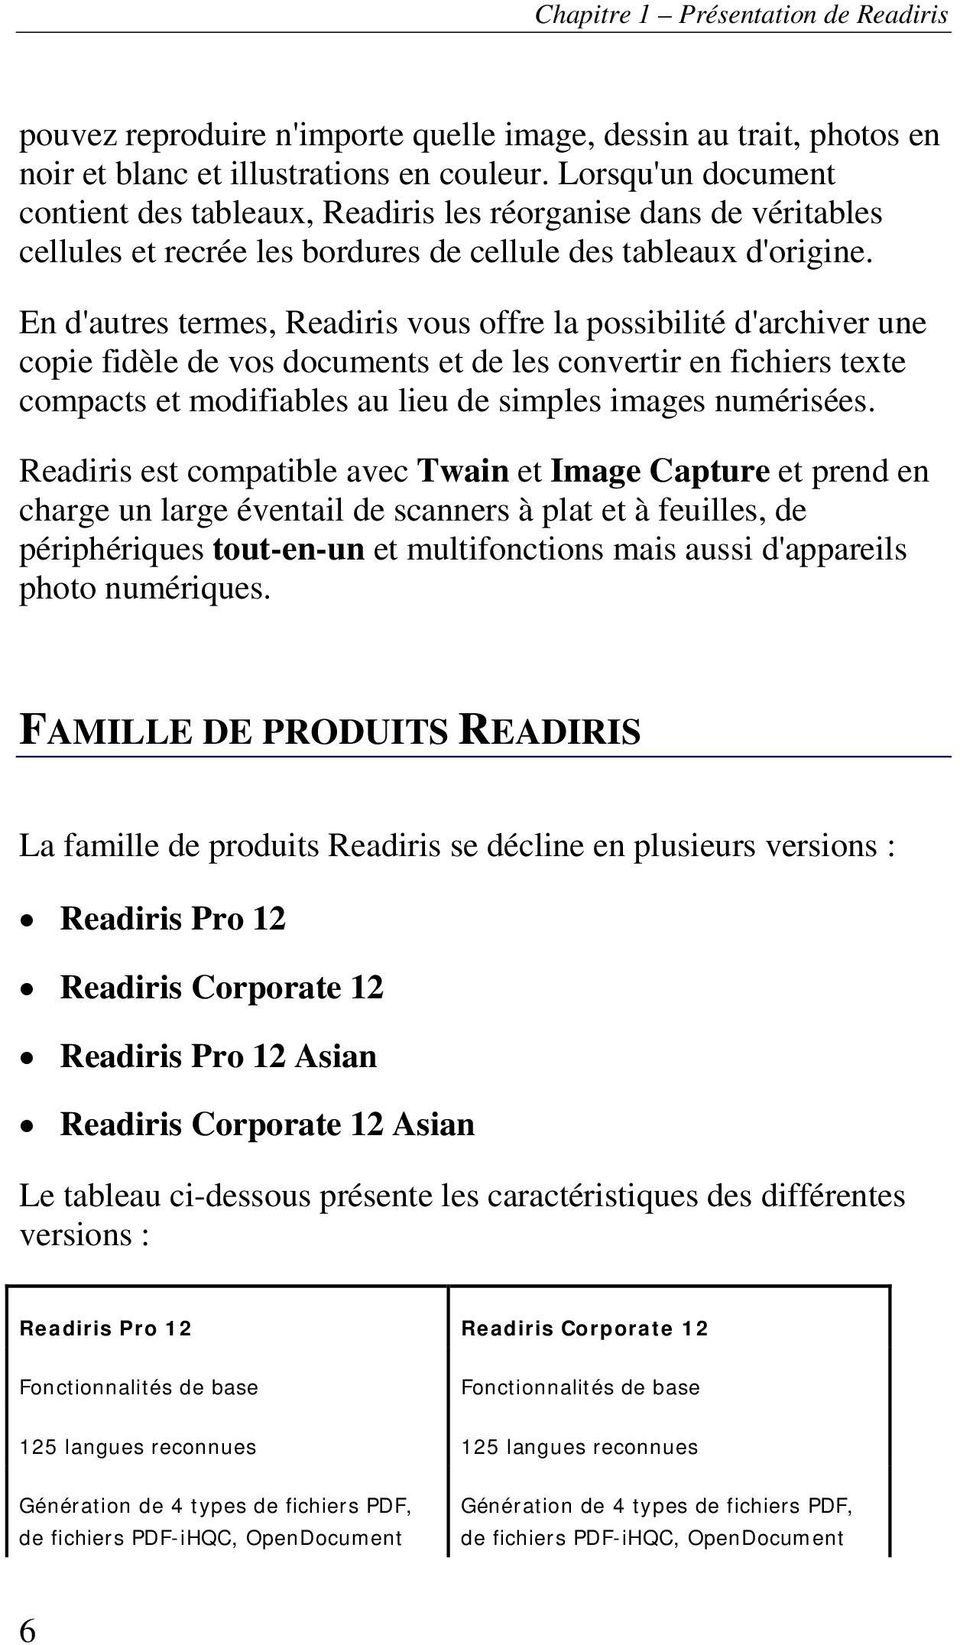 En d'autres termes, Readiris vous offre la possibilité d'archiver une copie fidèle de vos documents et de les convertir en fichiers texte compacts et modifiables au lieu de simples images numérisées.